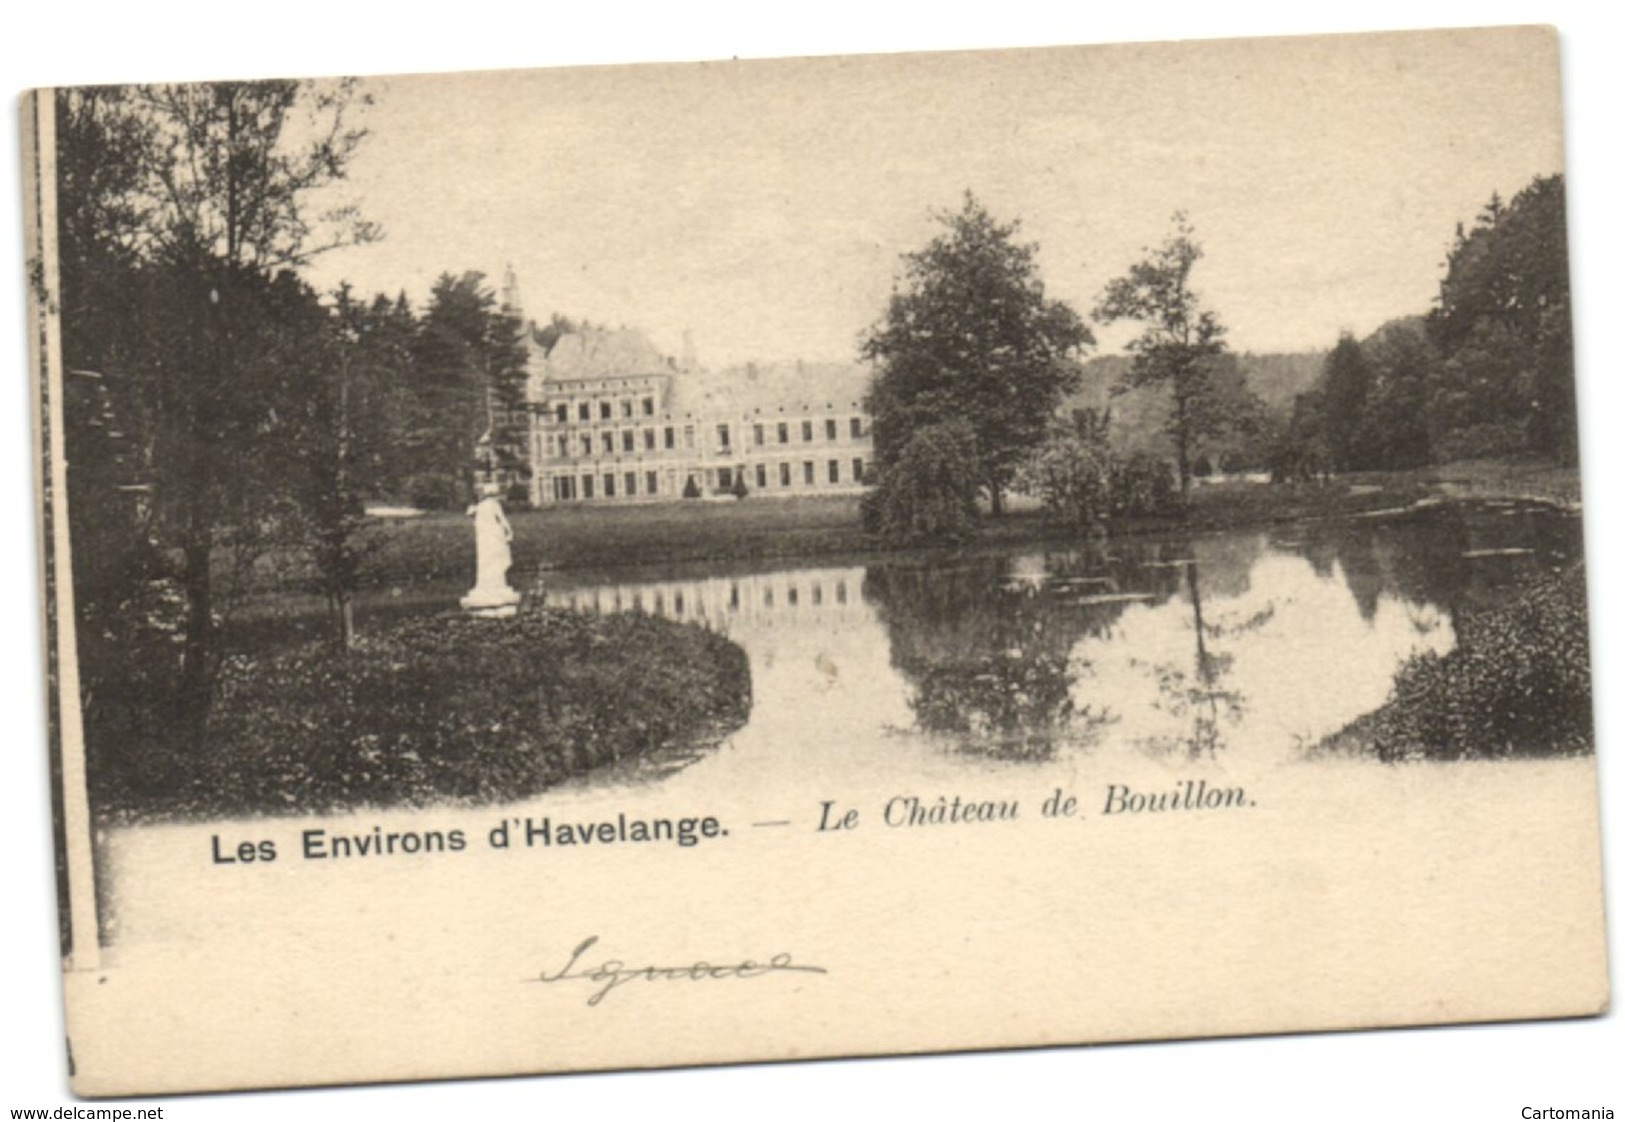 Les Envions D'Havelange - Le Château De Bouillon - Havelange